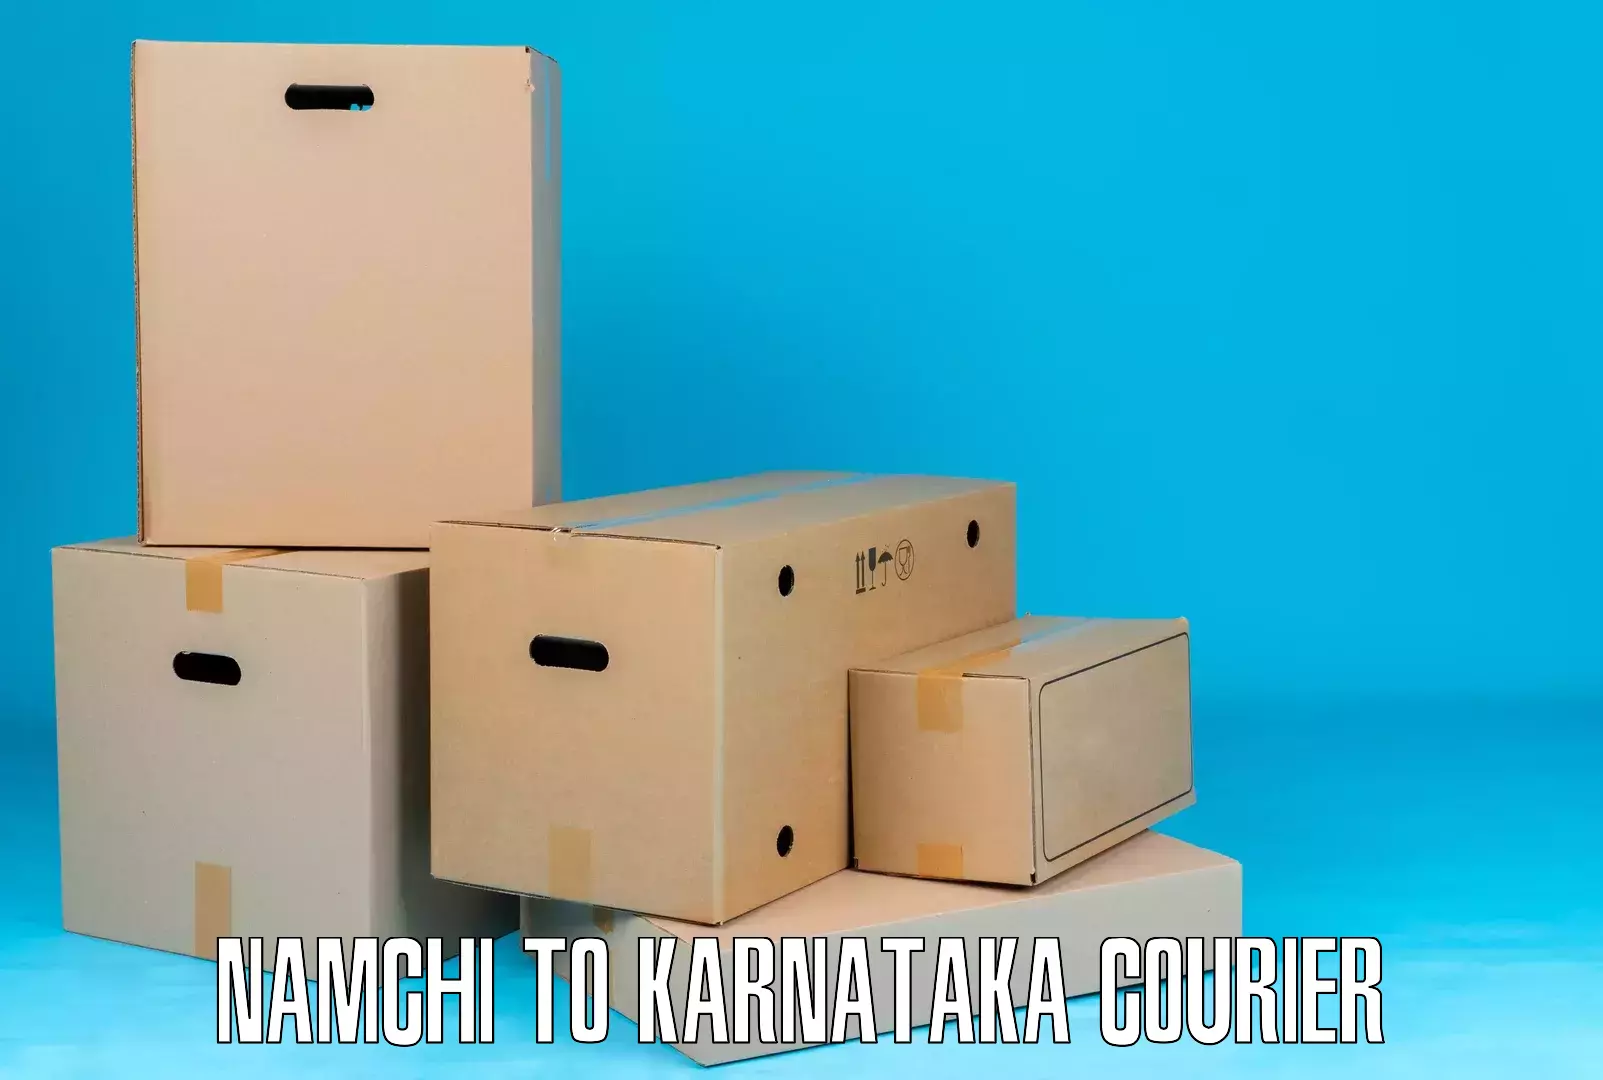 Sustainable shipping practices Namchi to Karnataka